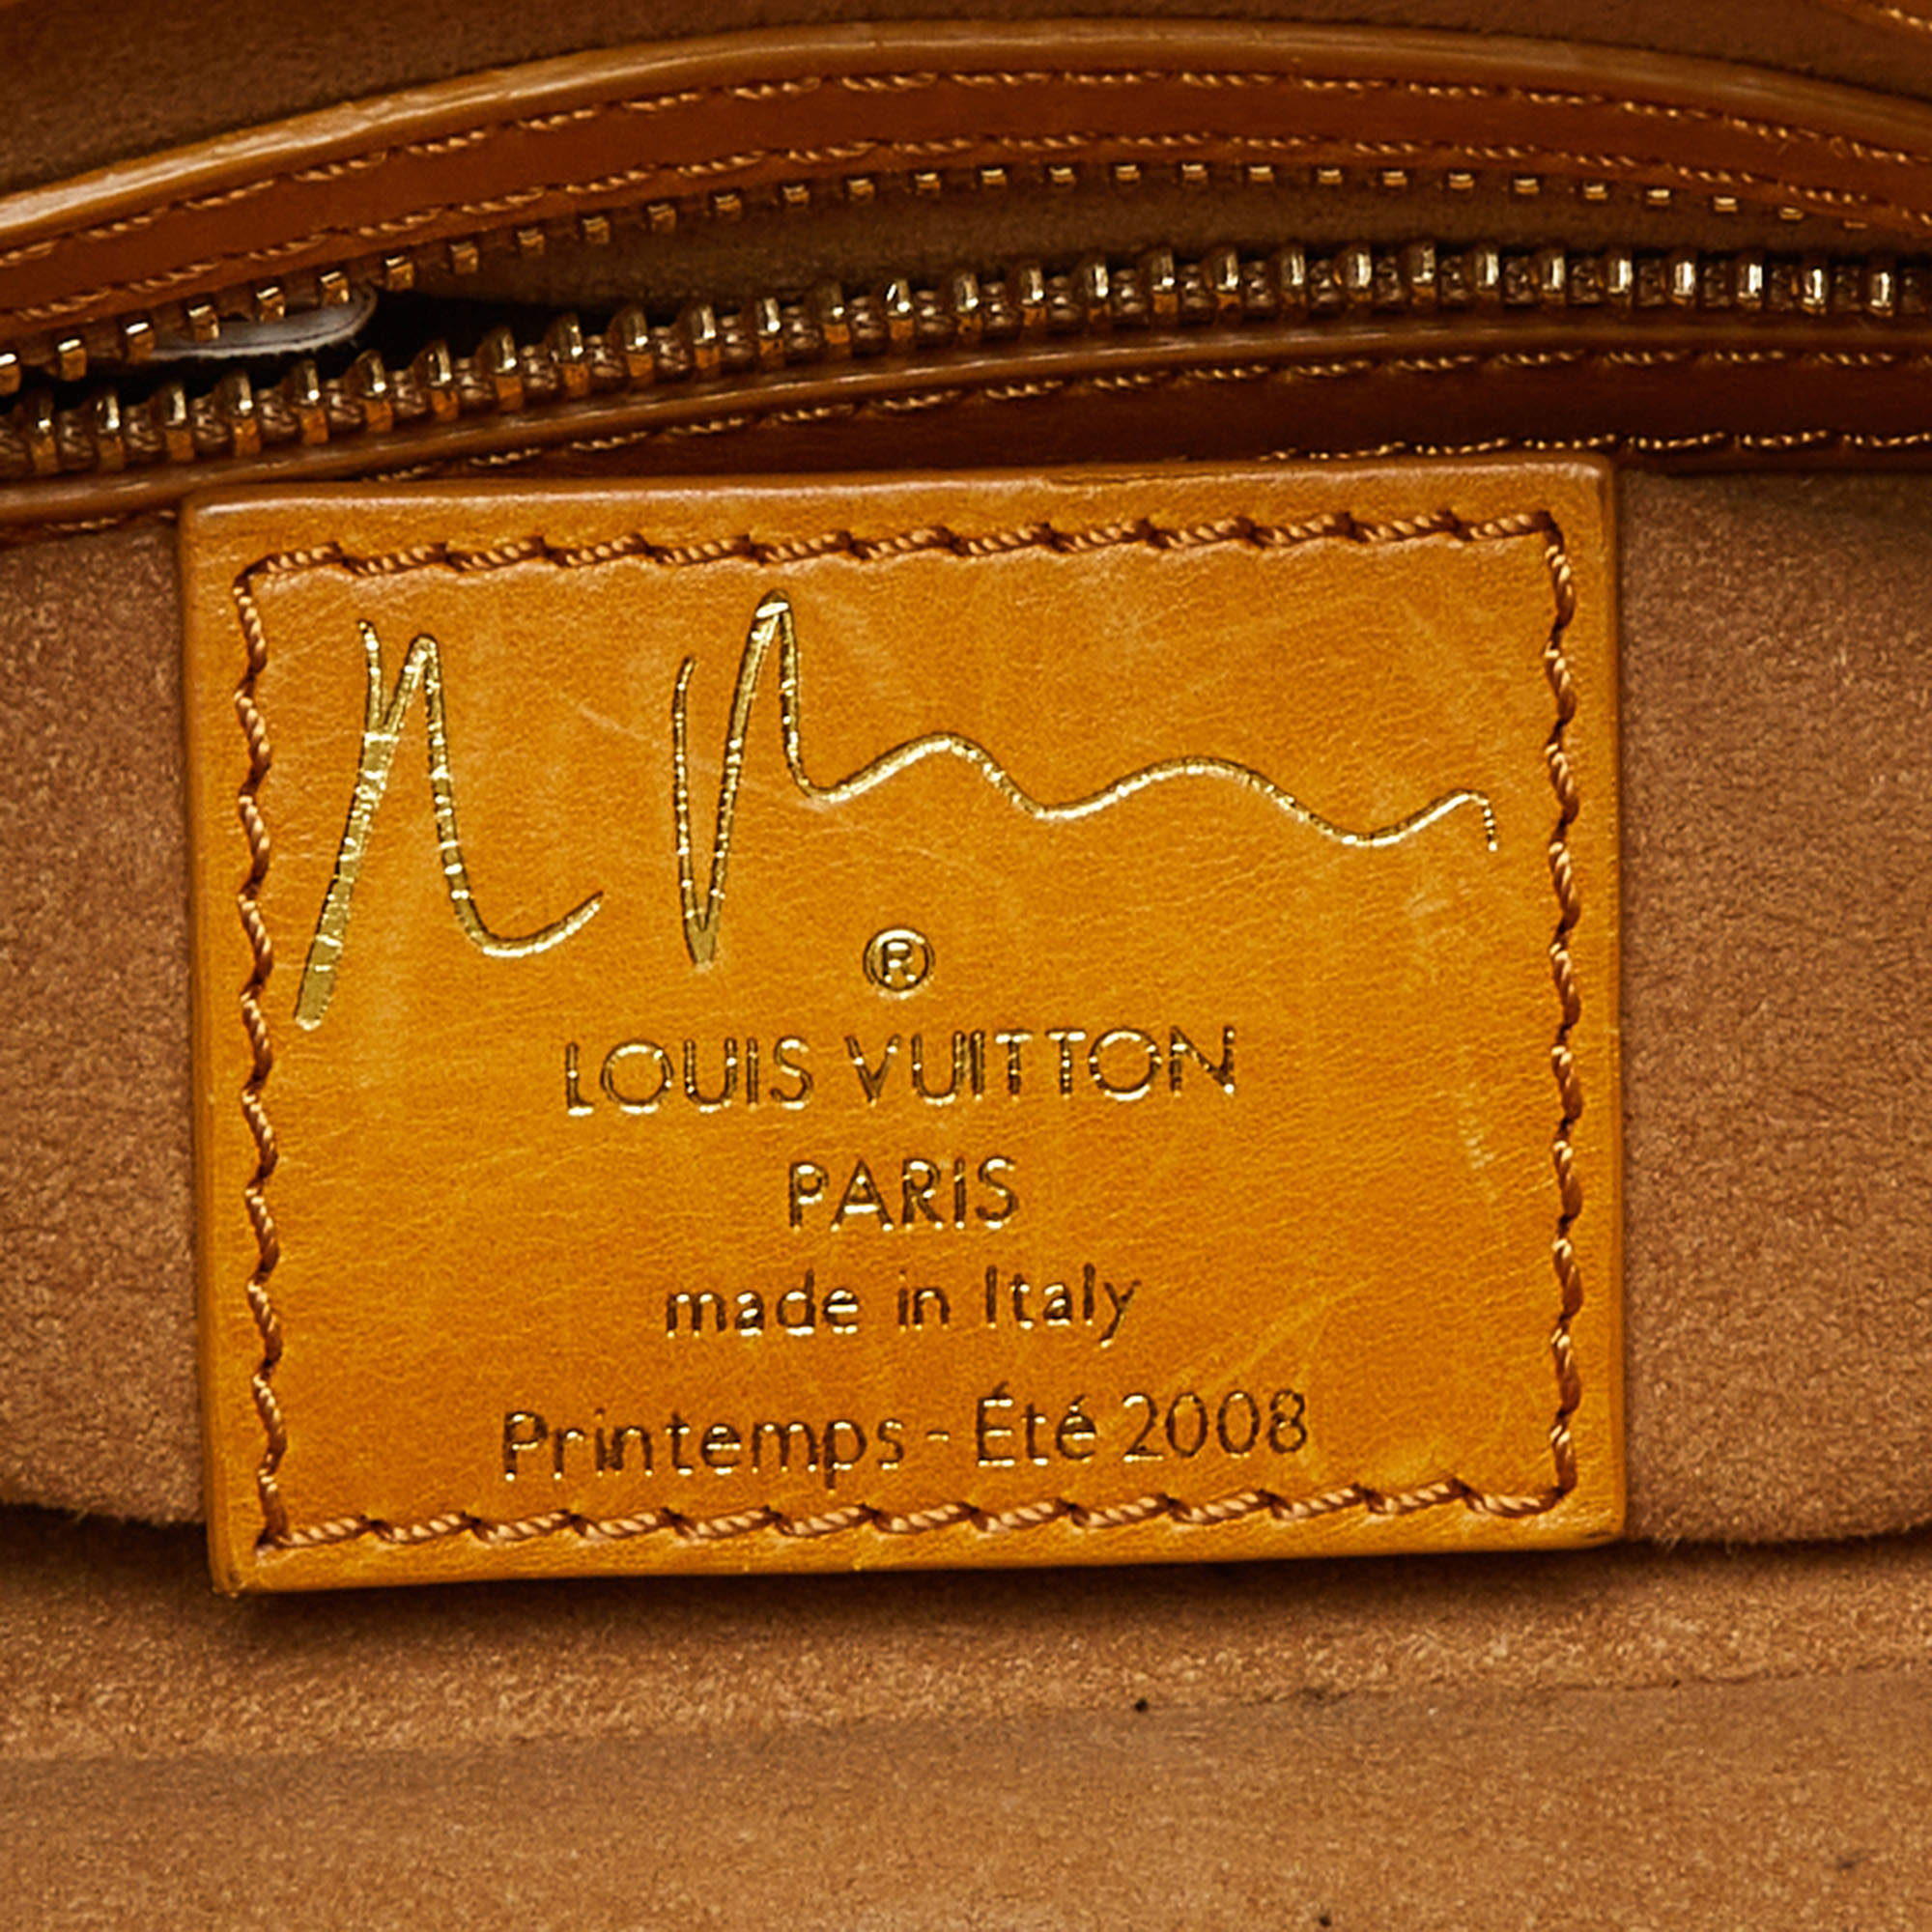 Louis Vuitton Richard Prince Watercolor Aquarelle Jamais Limited Bag  8i120100m - Tokyo Vintage Store